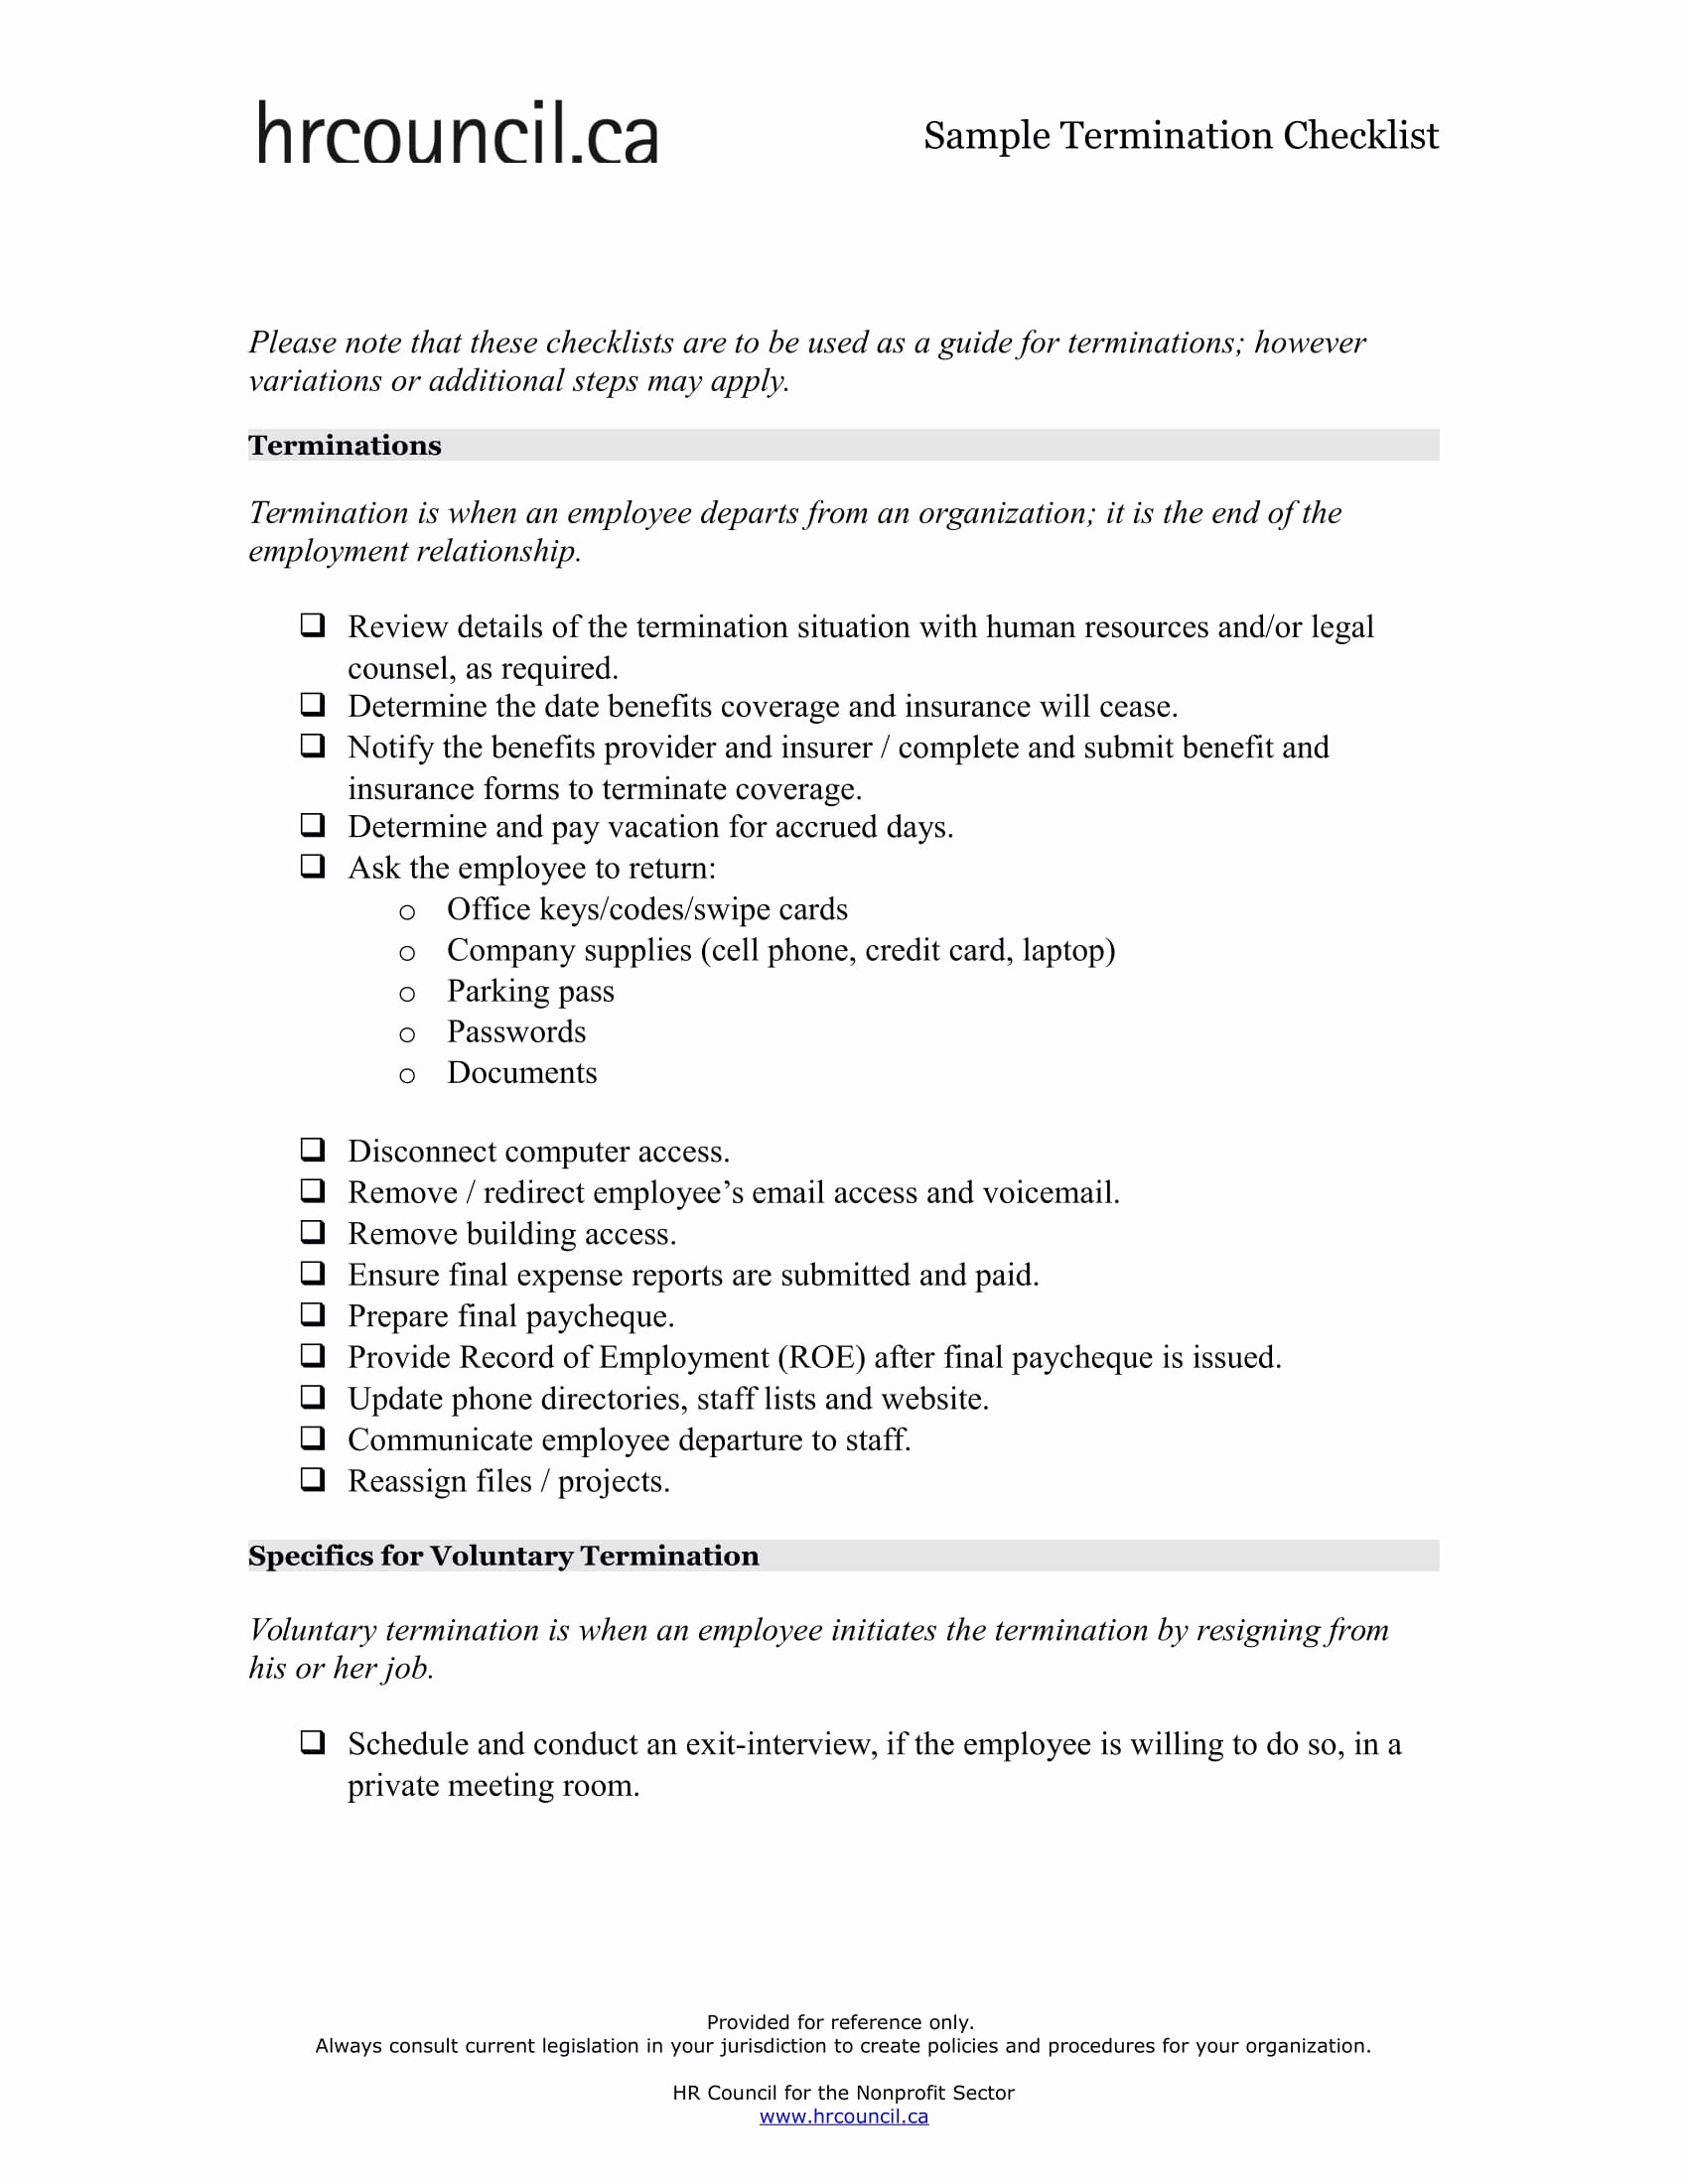 Employment Termination Checklist Template Elegant 4 Employee Termination Checklist form Word Excel Pdf